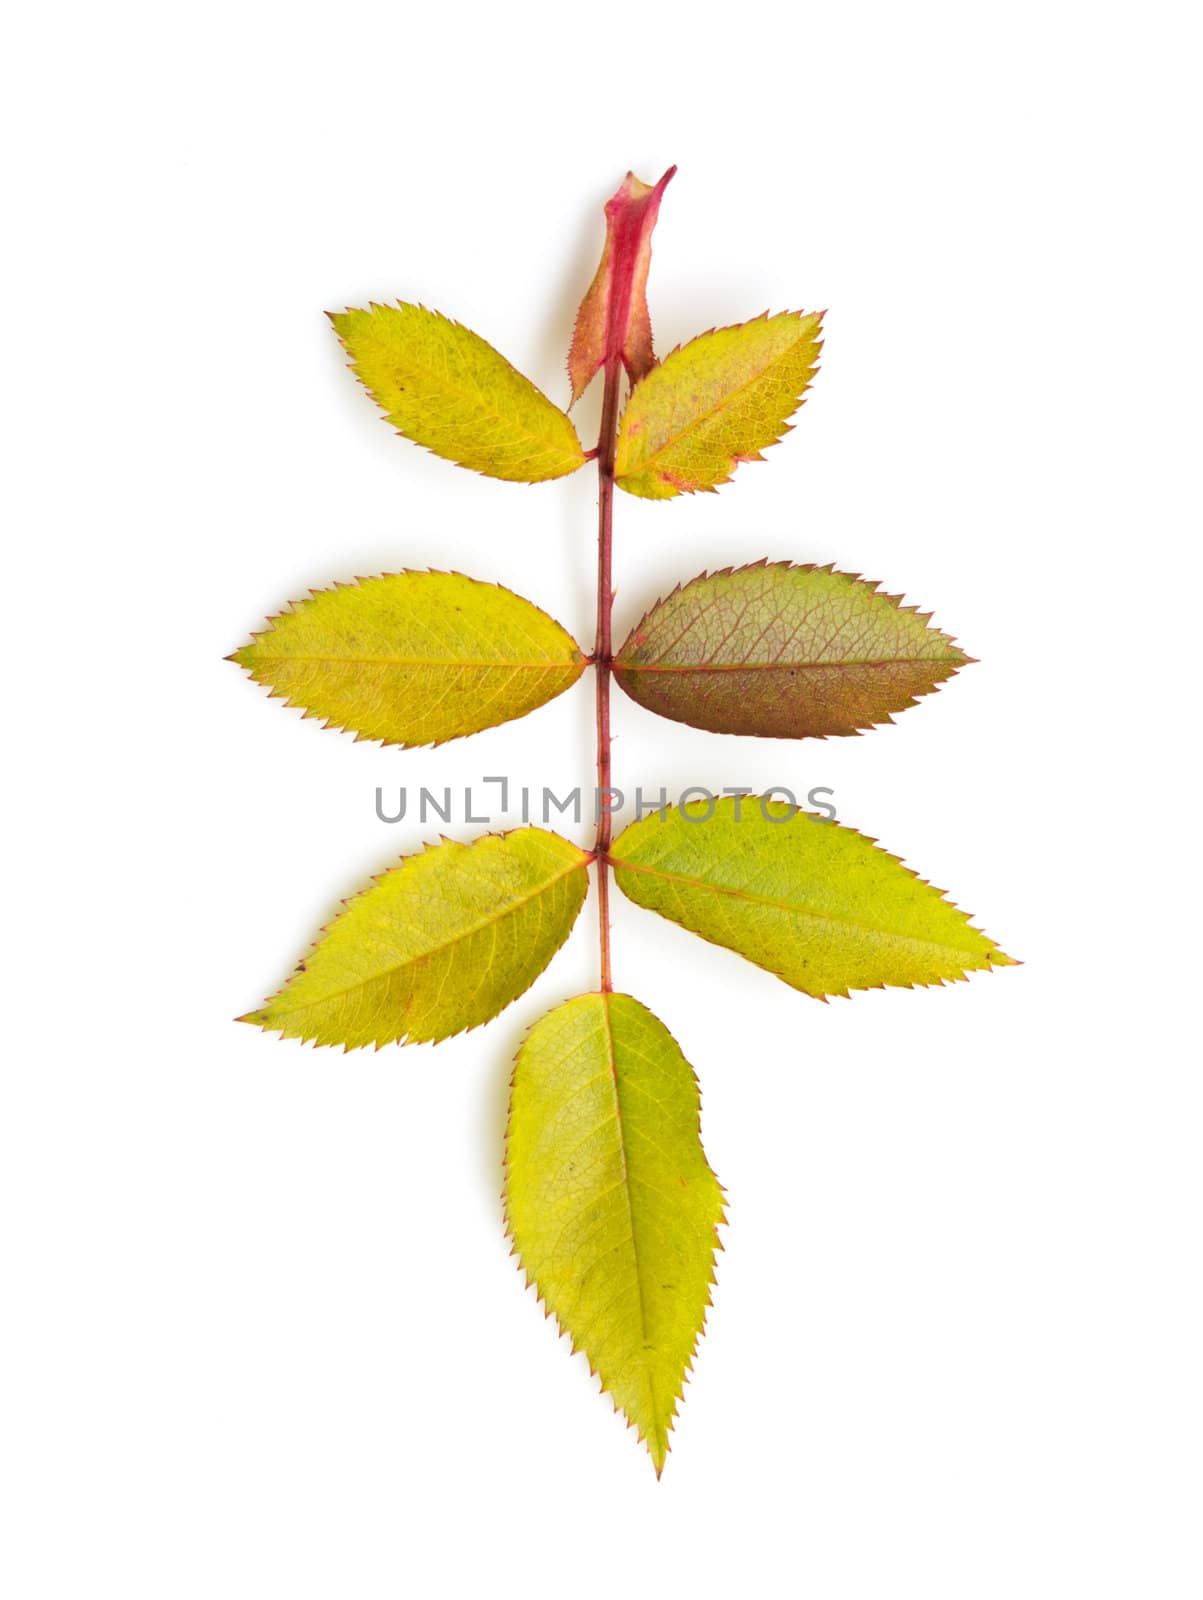 autumn leaf on white background by schankz